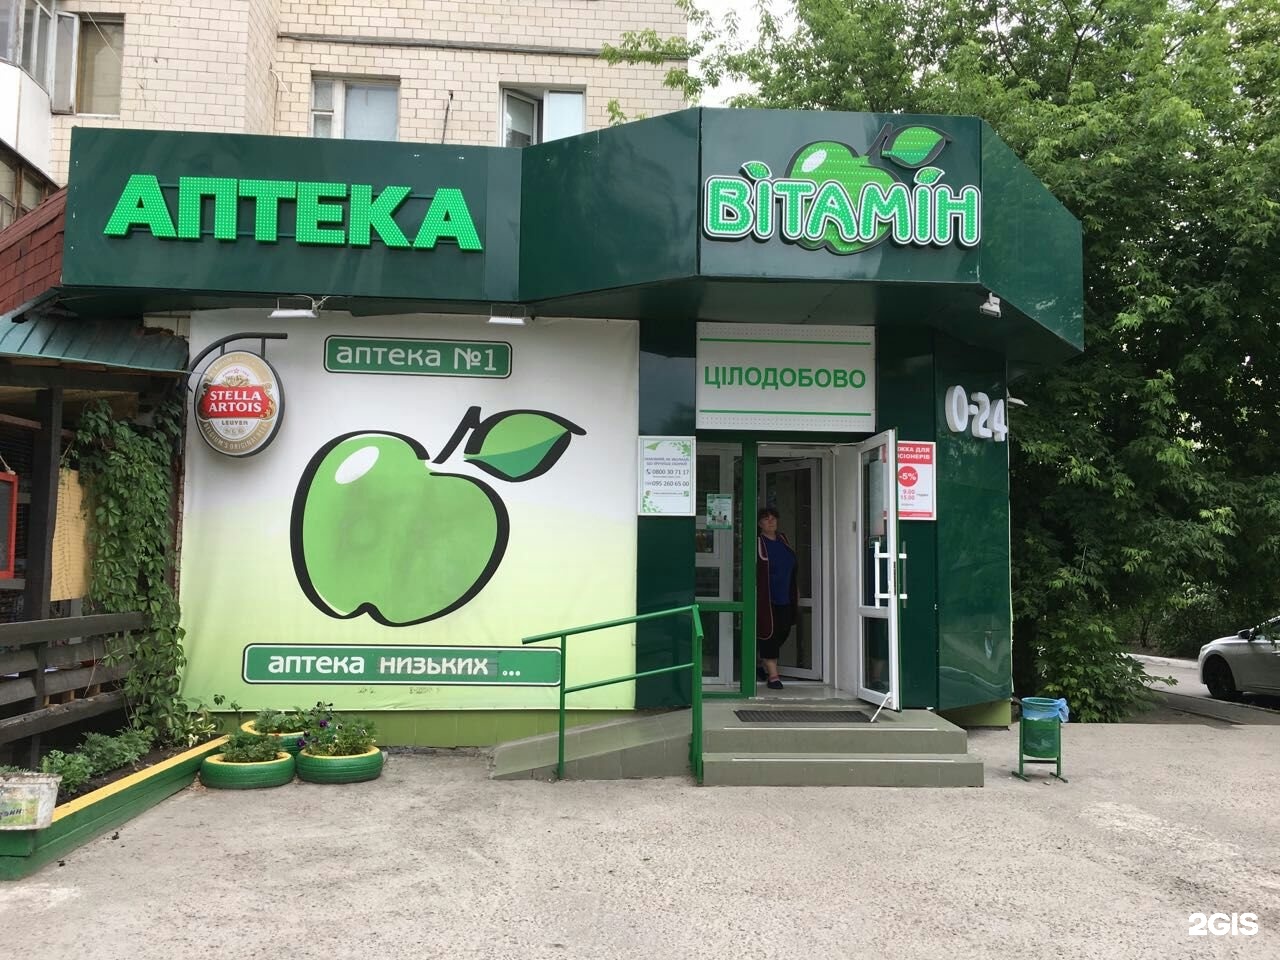 Телефон аптеки зеленая. Аптека Киев. Витамины в аптеке. Дешевая аптека Витаминка. Витаминка аптека Стерлитамак.